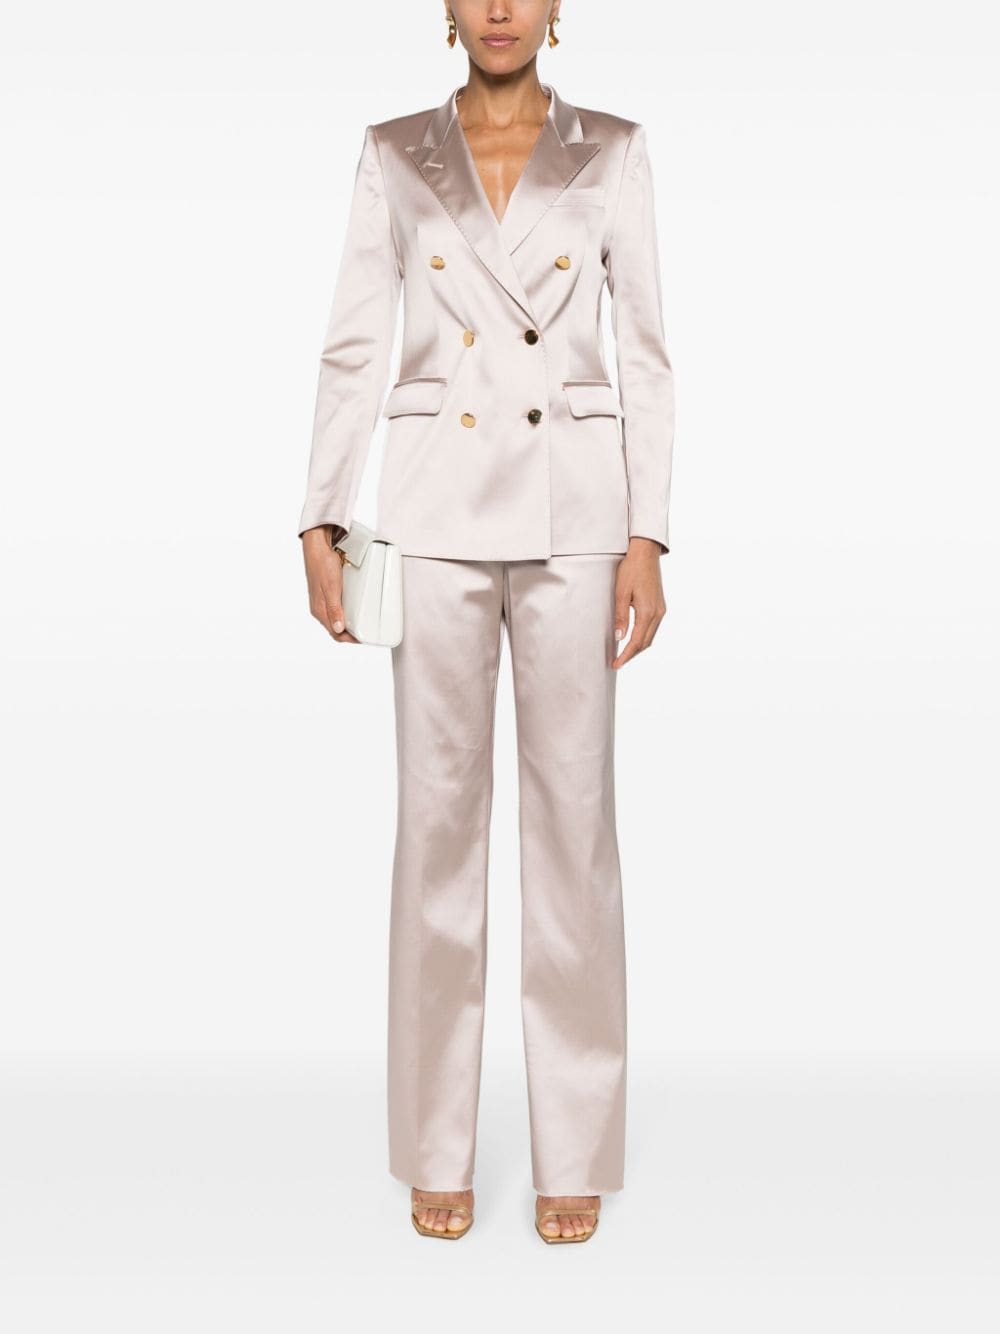 solovedress 2 Piece Business Casual Satin Peak Lapel Women's Suit (Blazer+Pants)